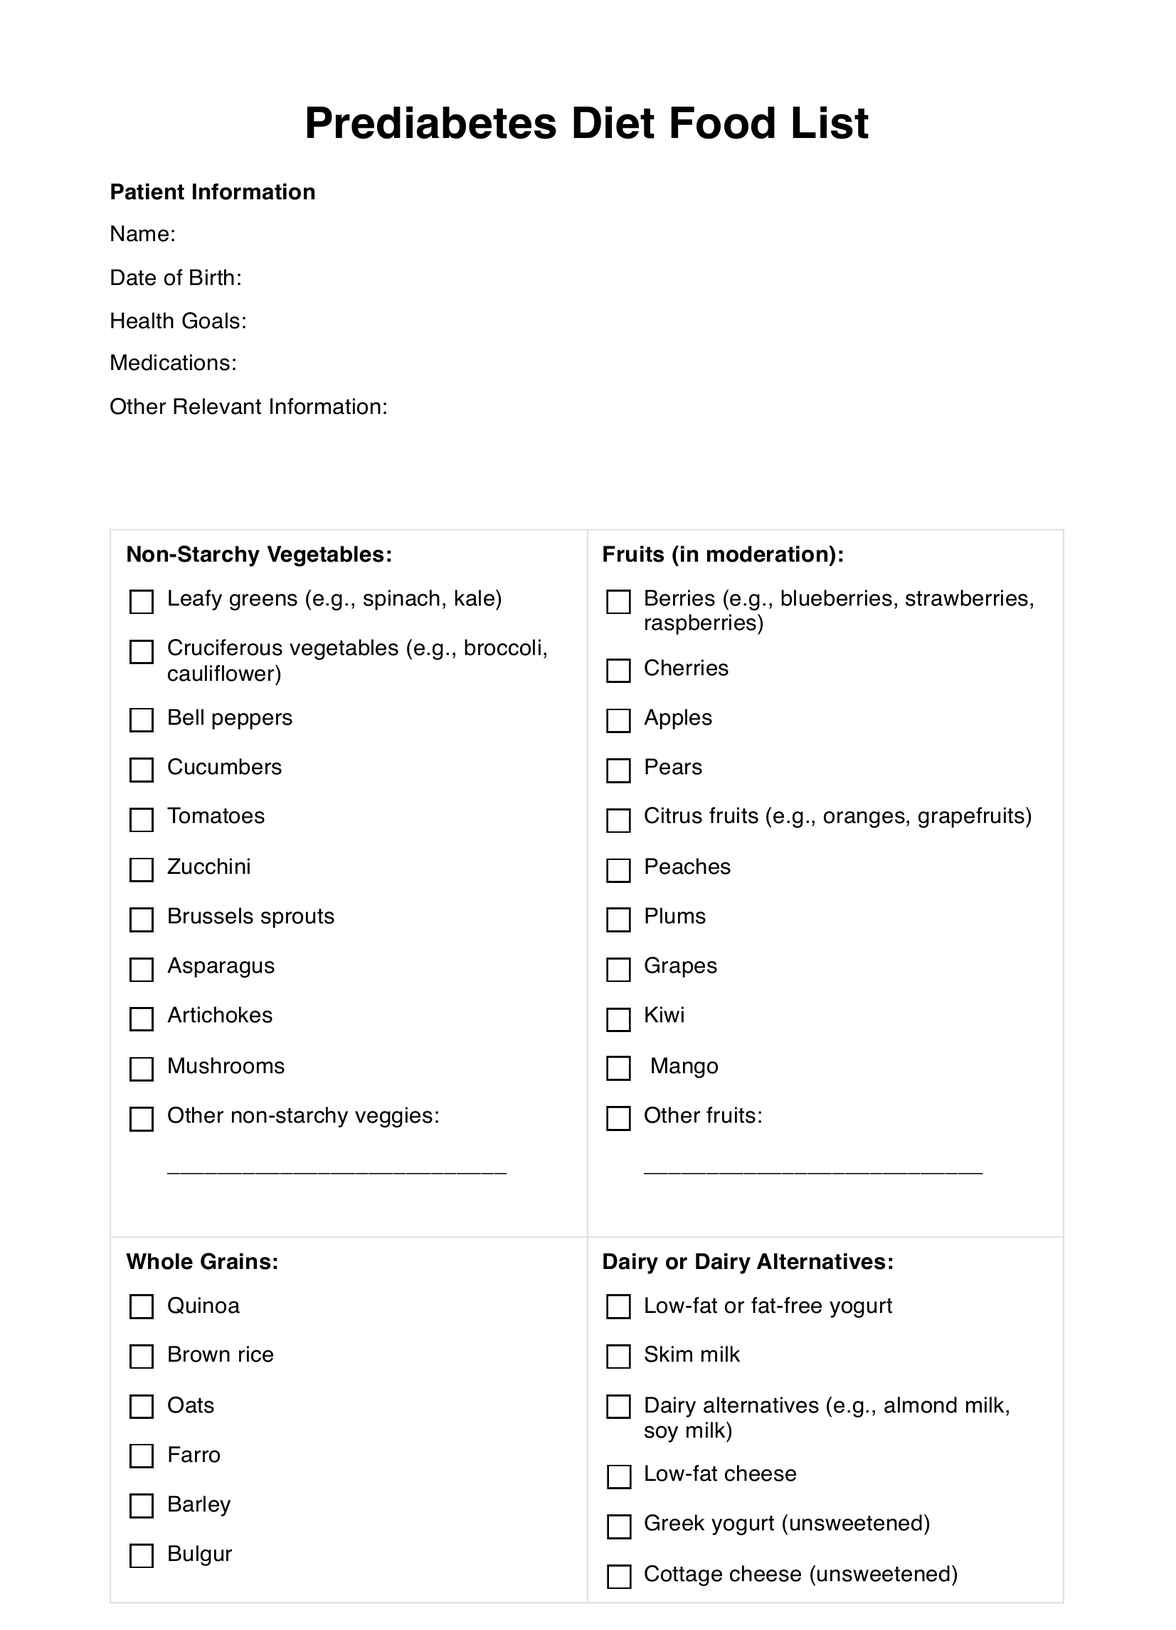 Prediabetes Diet Food List PDF Example